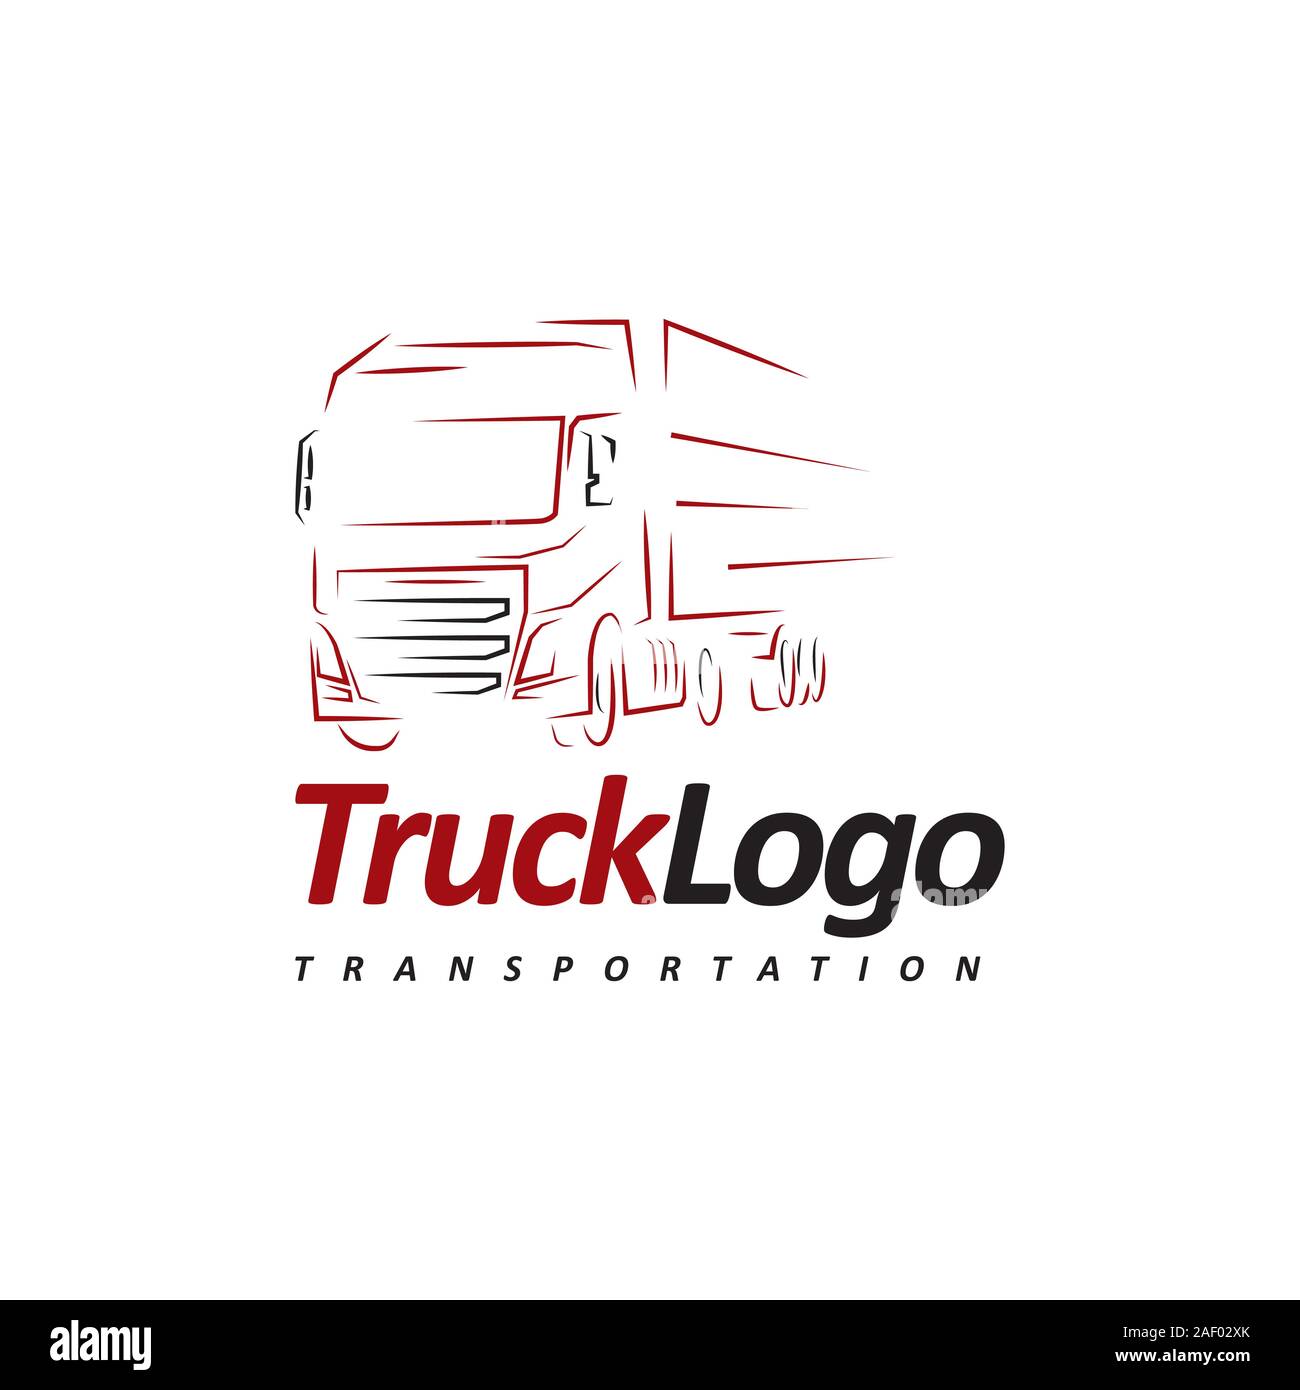 design vinyl logos for truck